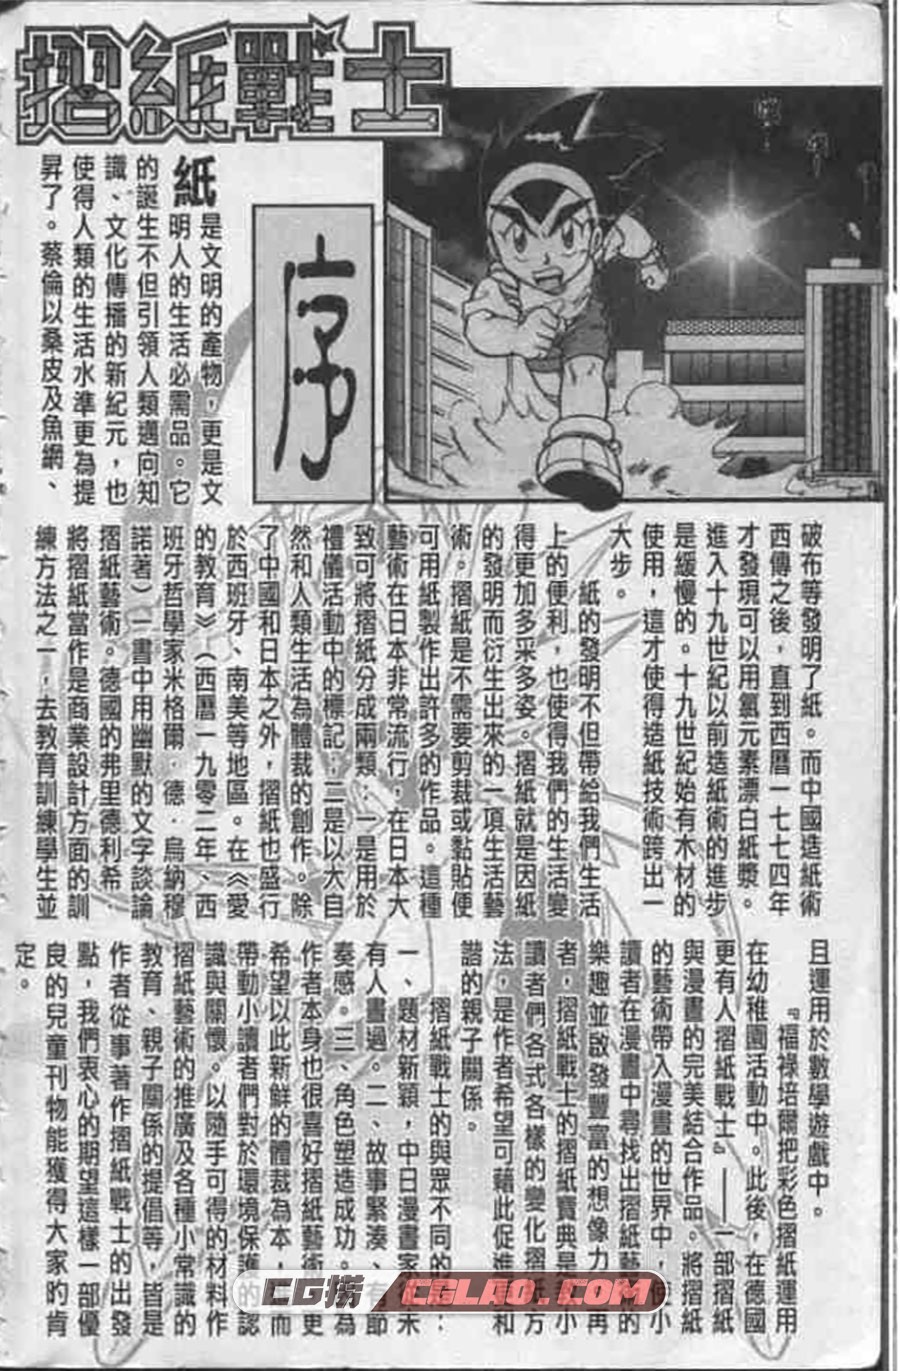 折纸战士 周显宗 1-22册 漫画全集下载 百度网盘,002.jpg